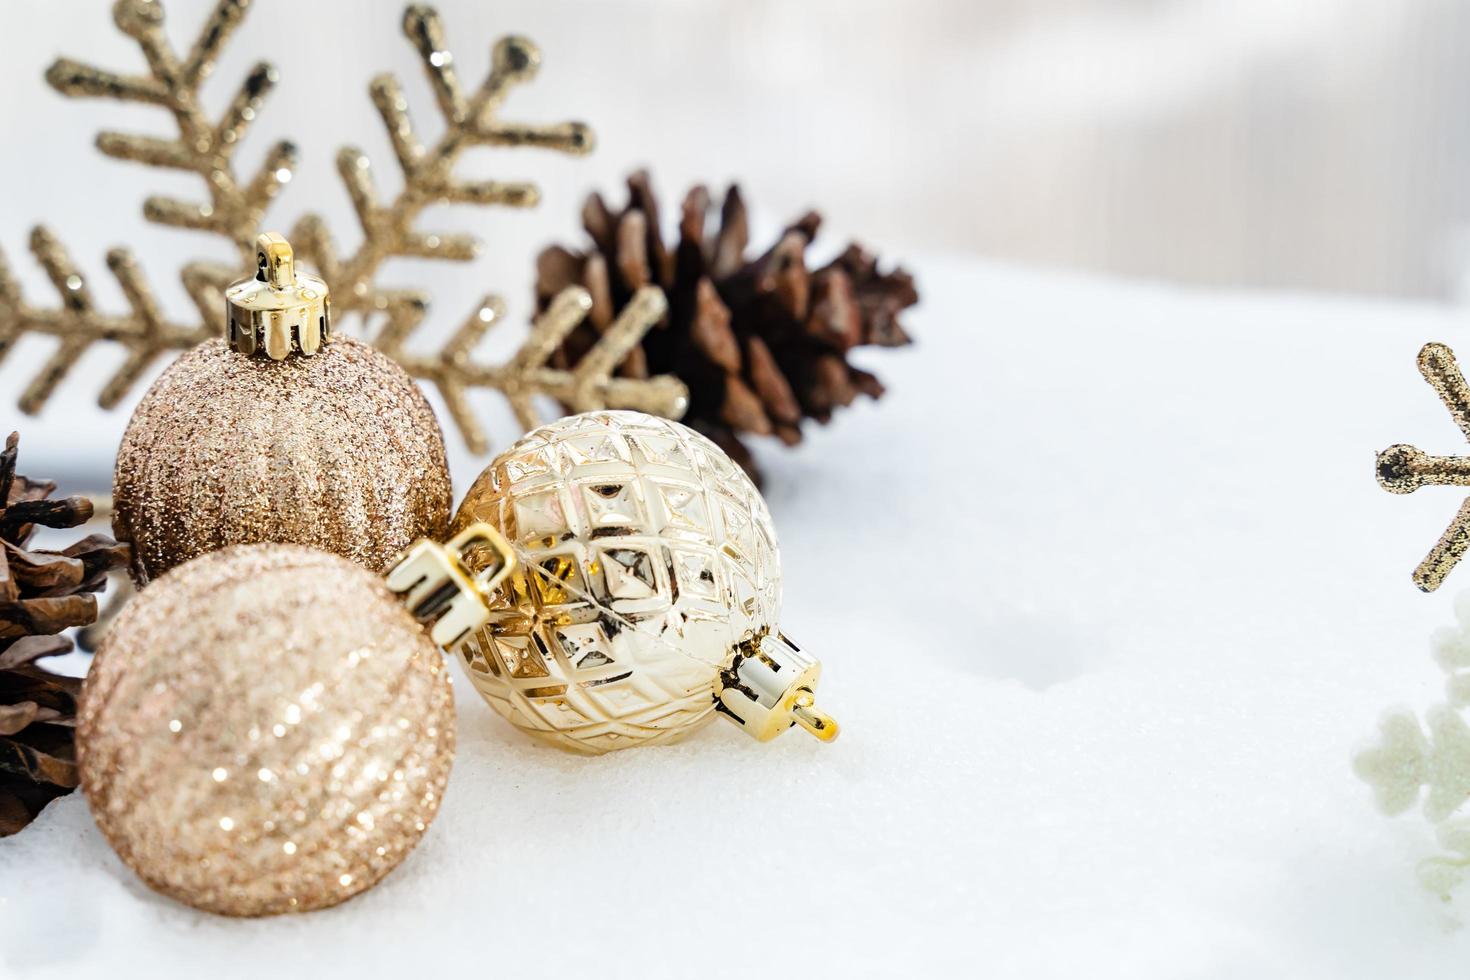 navidad de invierno - bolas de navidad con cinta en la nieve, concepto de vacaciones de invierno. bolas rojas de navidad, bolas doradas, decoraciones de pino y copos de nieve en el fondo de la nieve foto